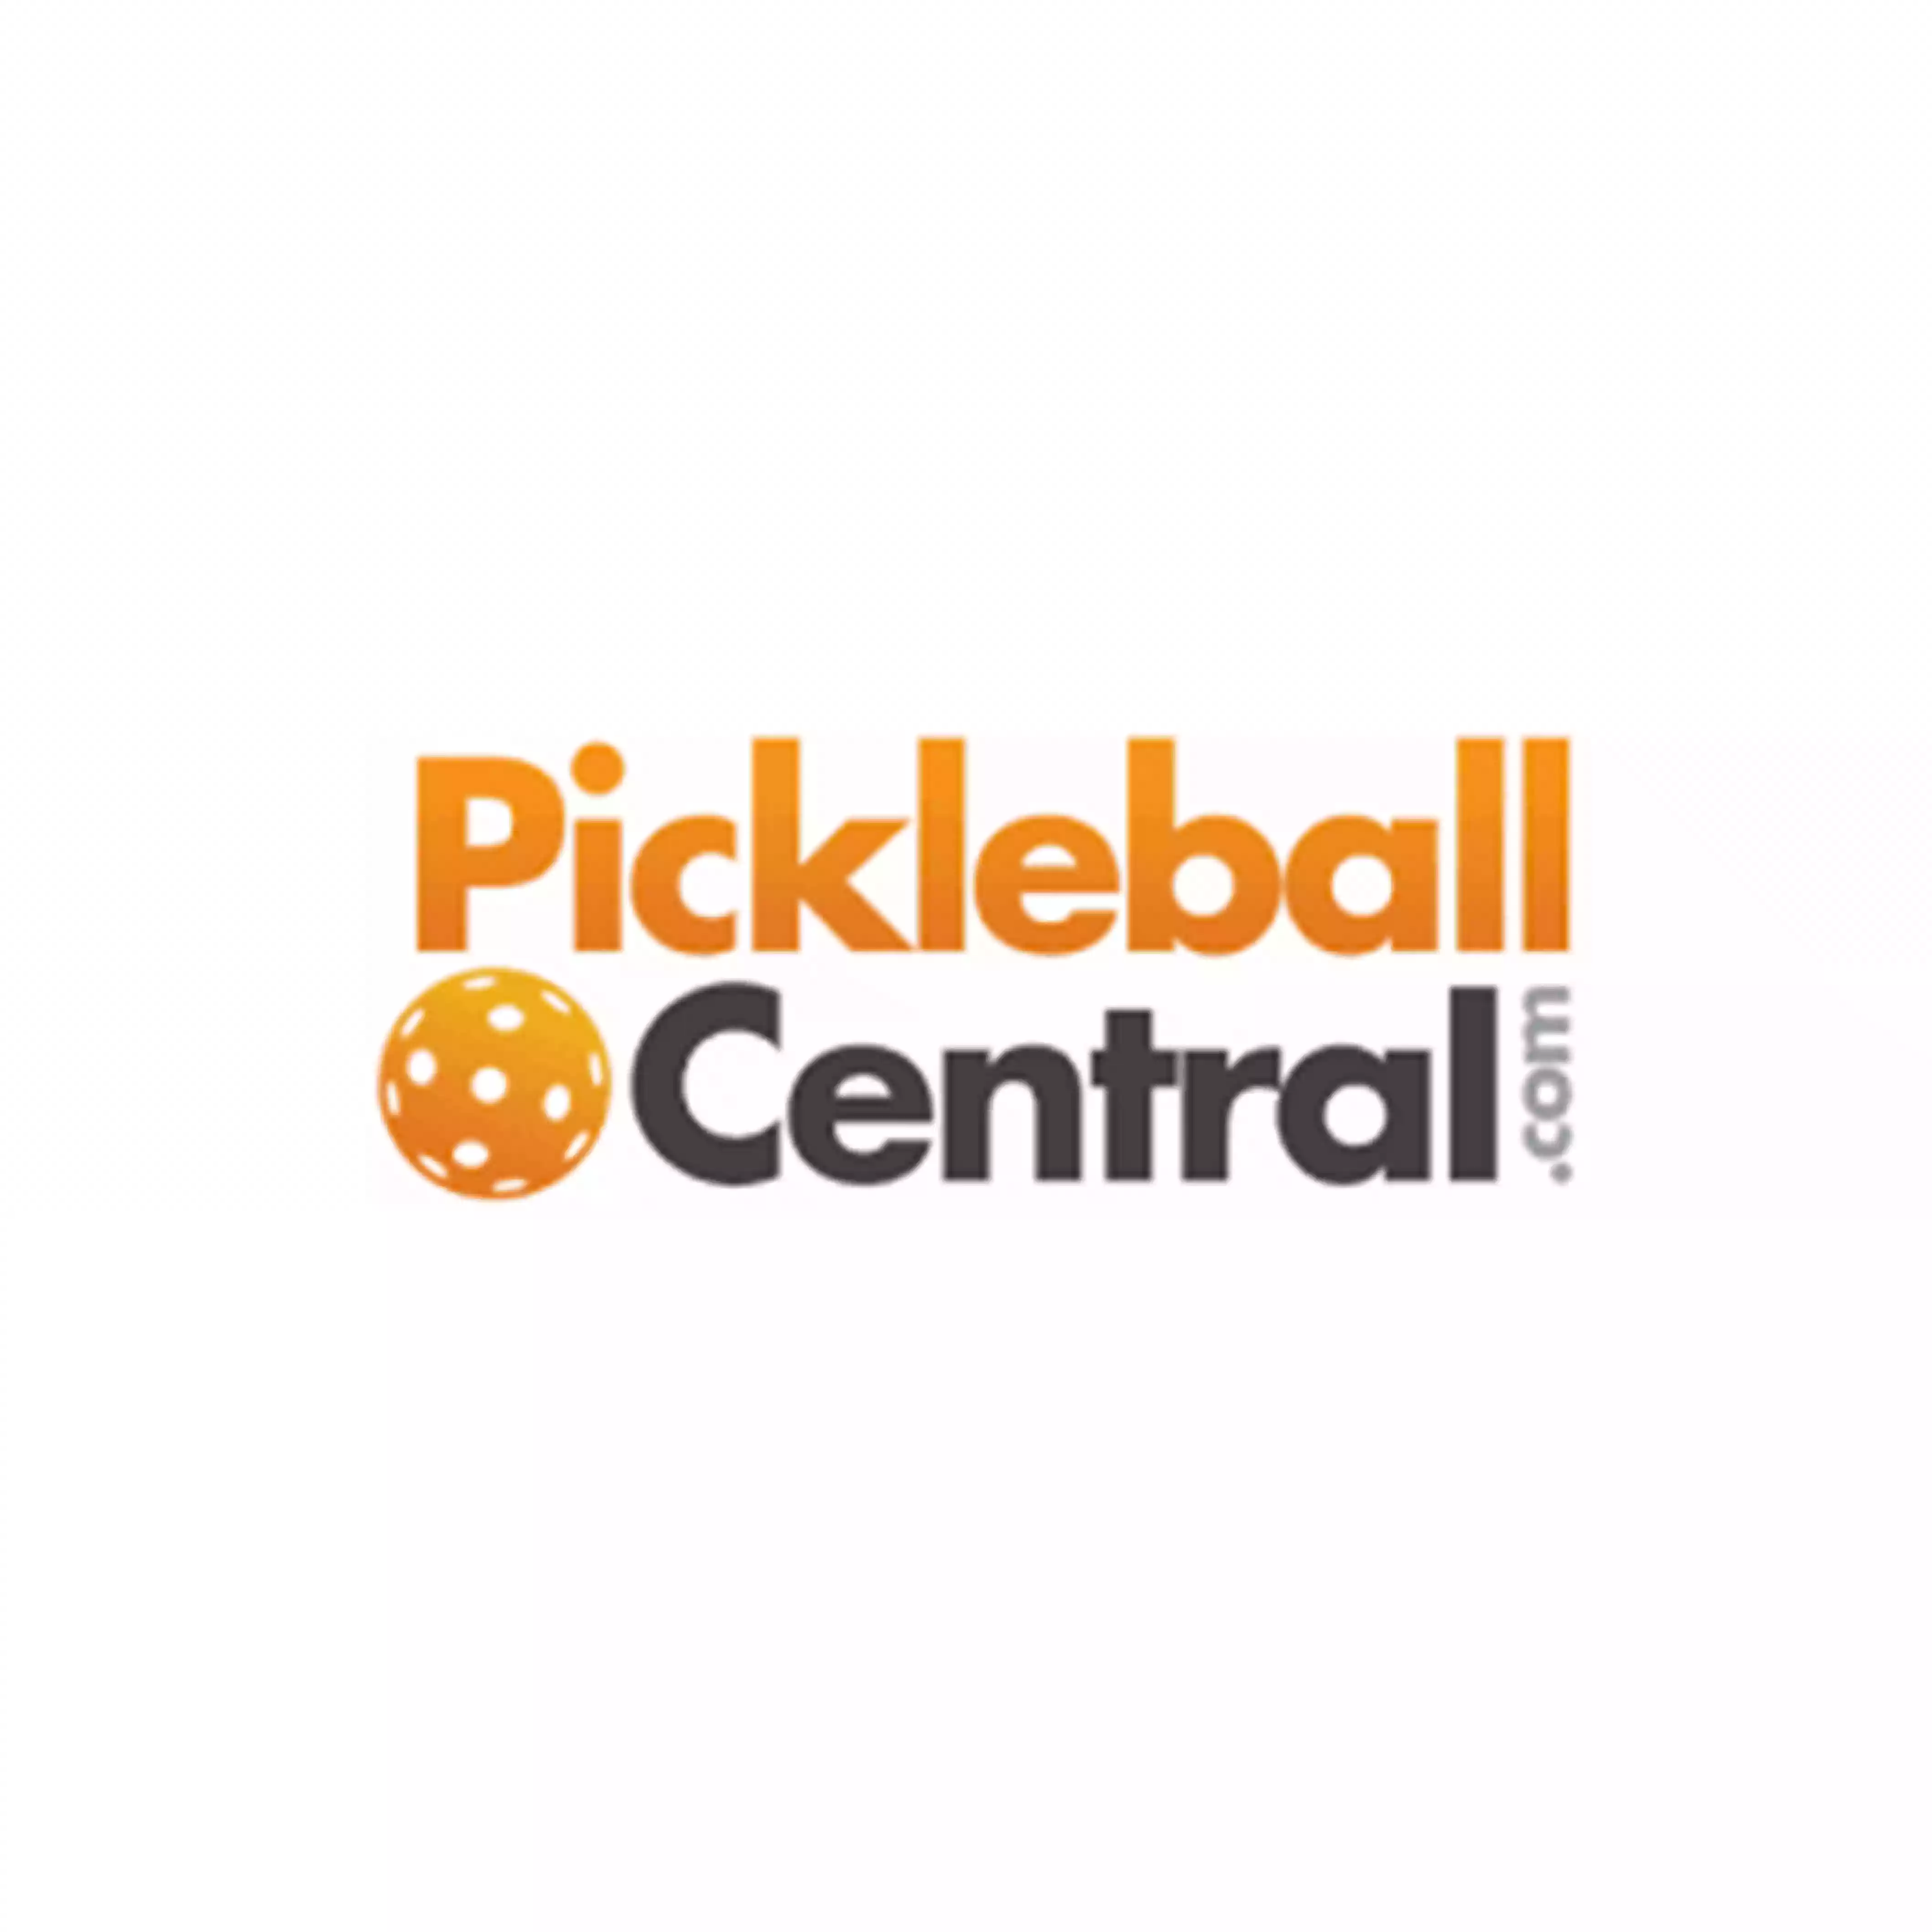 Pickleball Central